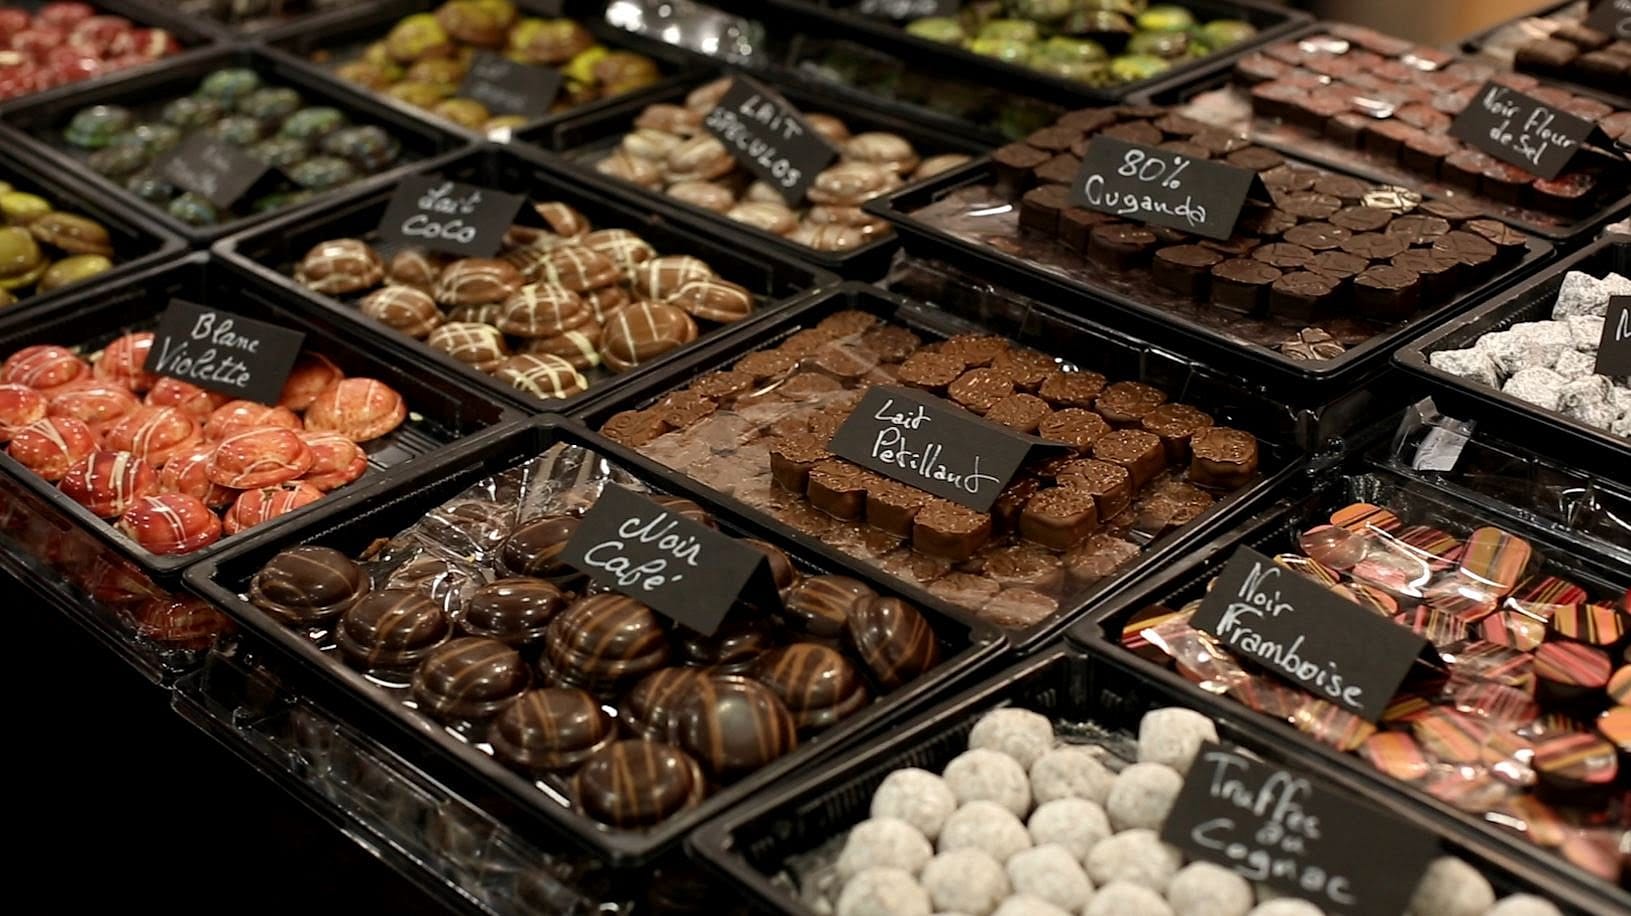 Вкусный шоколад купить. Шоколадный бутик. Шоколадные конфеты в магазине. Бельгийский шоколад. Бельгийские шоколадные конфеты.